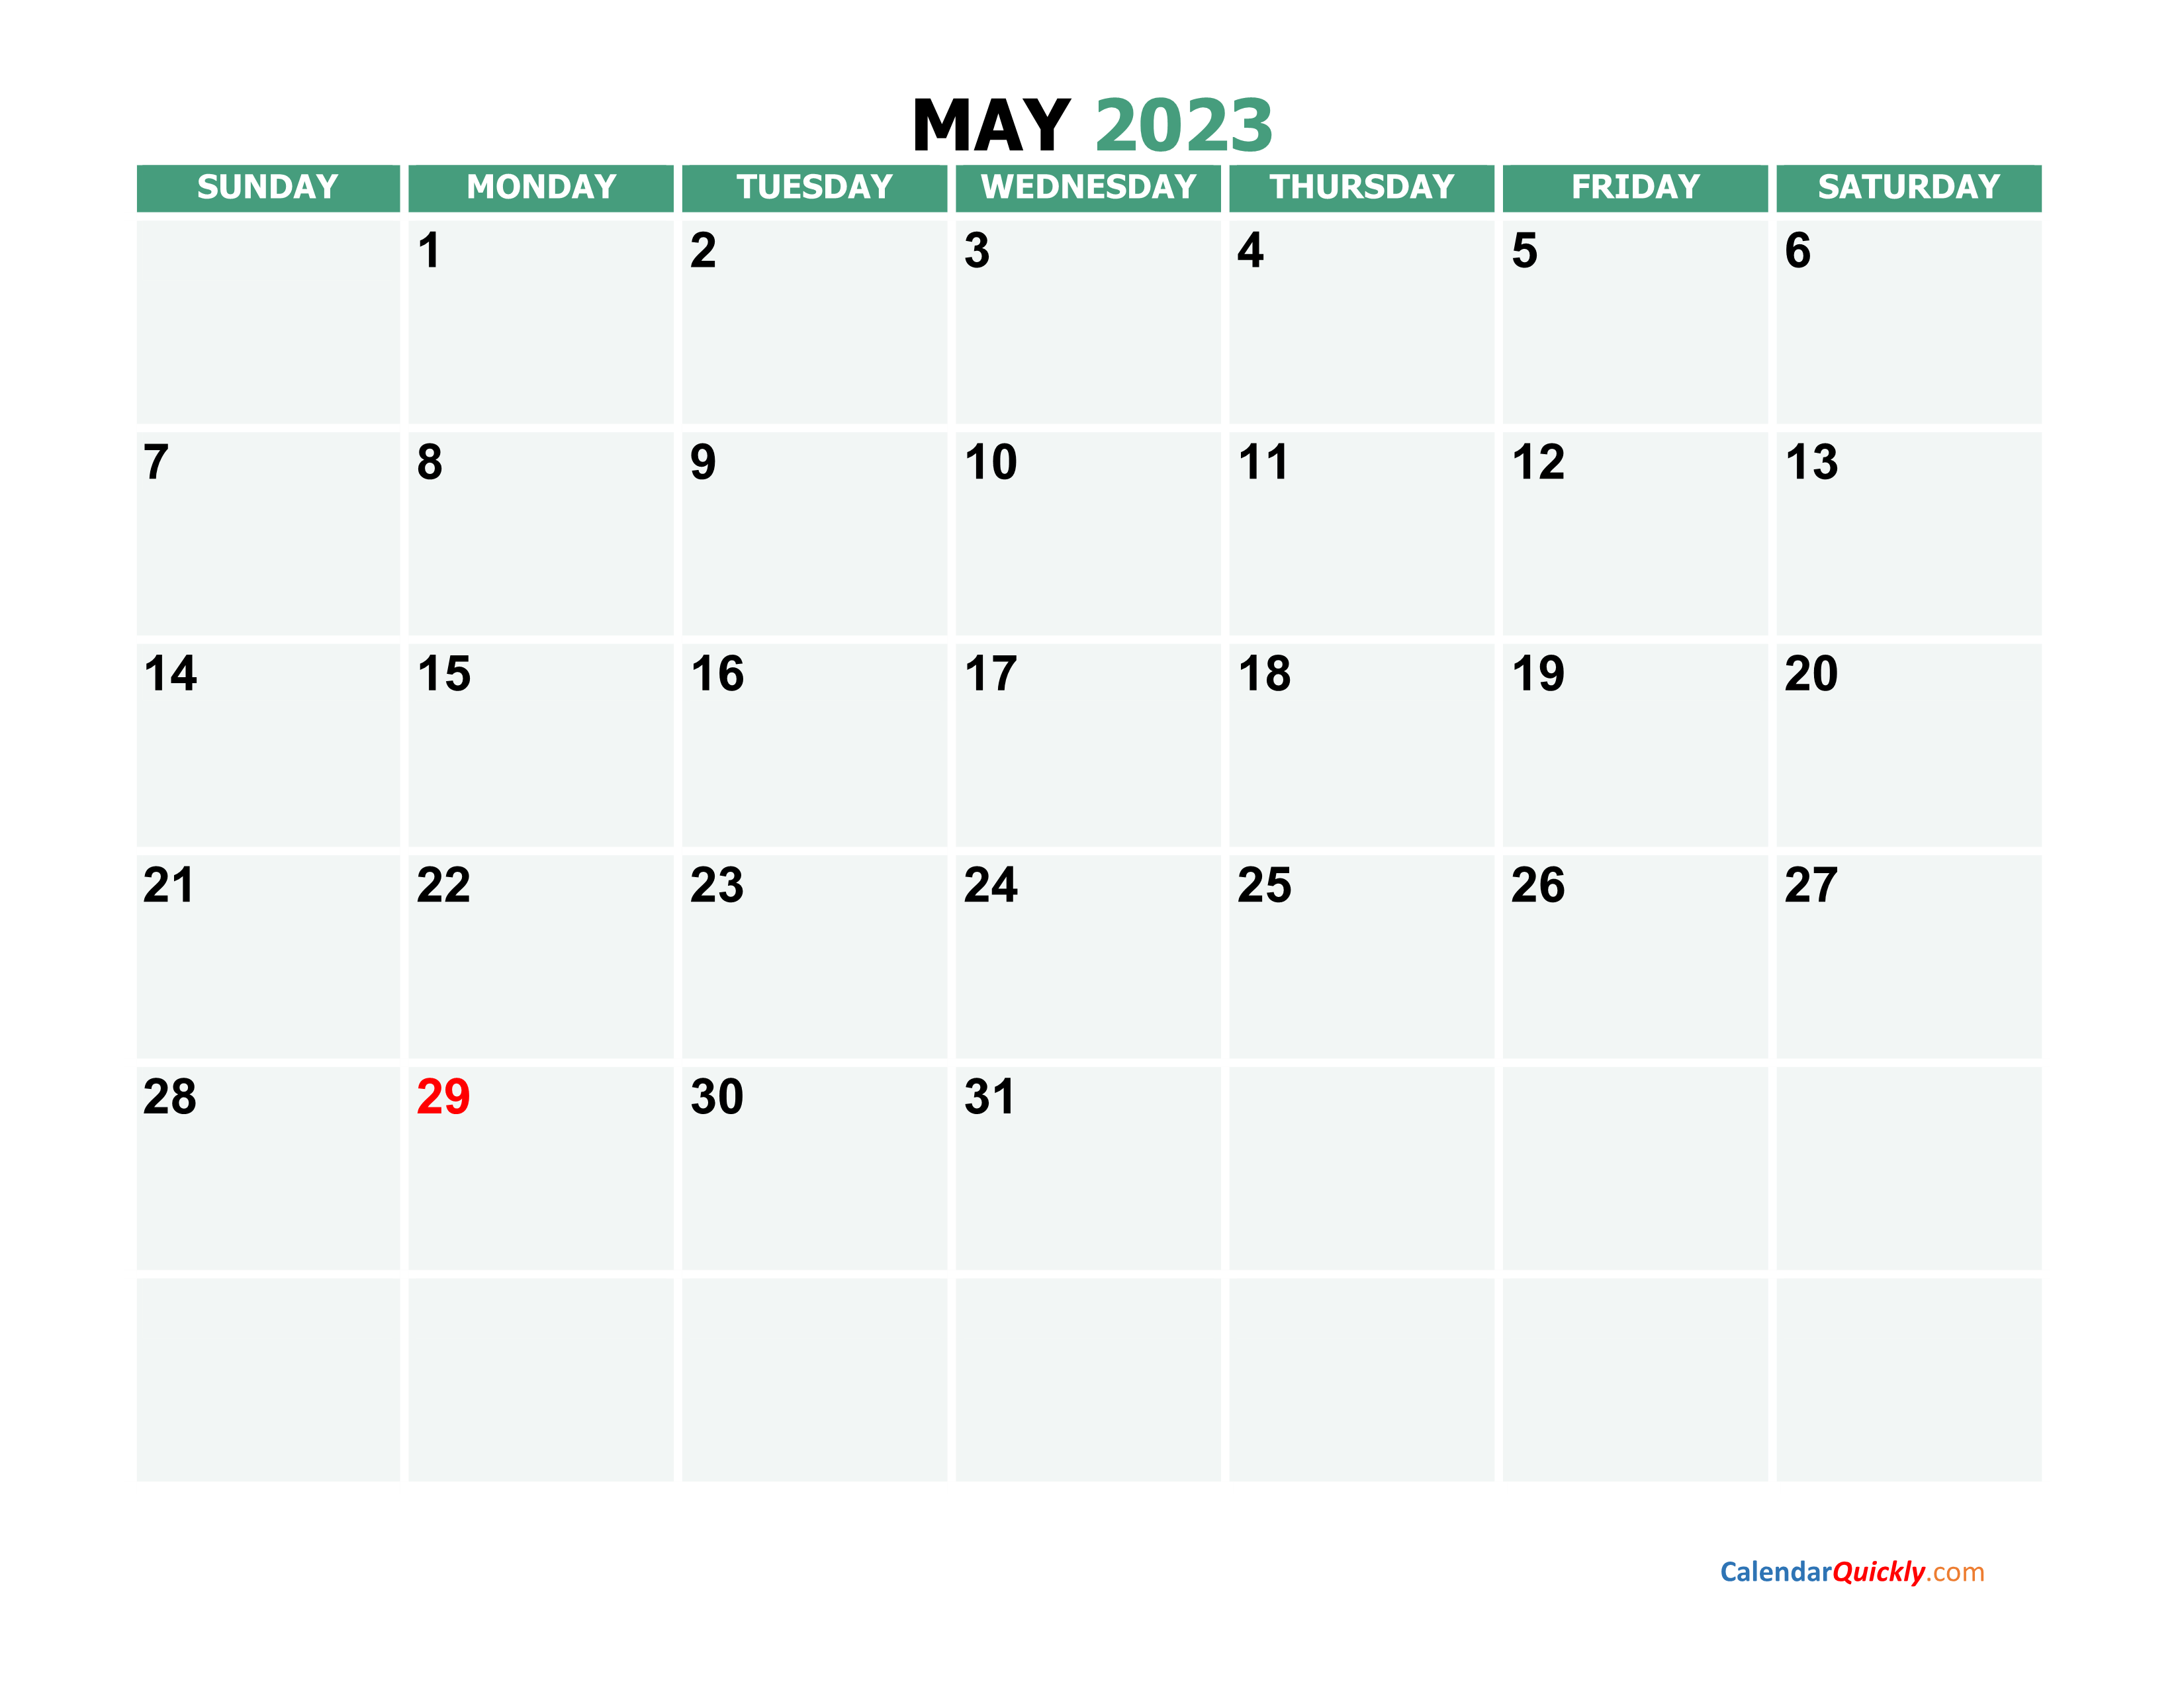 May 2023 Calendars Calendar Quickly